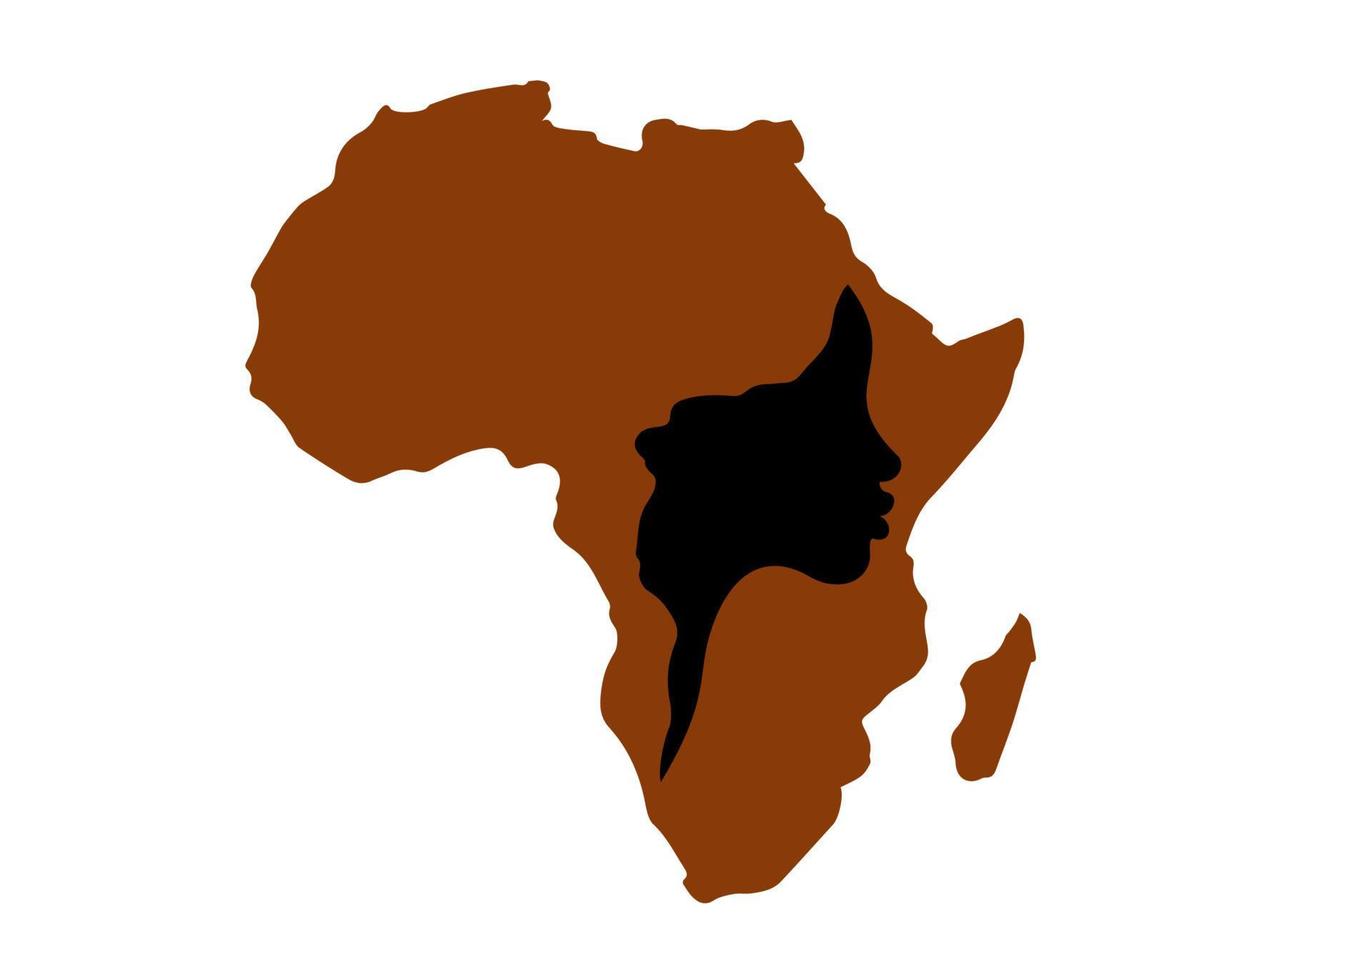 conceito de mulher africana, silhueta de perfil de rosto com turbante em forma de um mapa da África. modelo de design de logotipo tribal colorido afro de impressão. ilustração vetorial isolada no fundo branco vetor